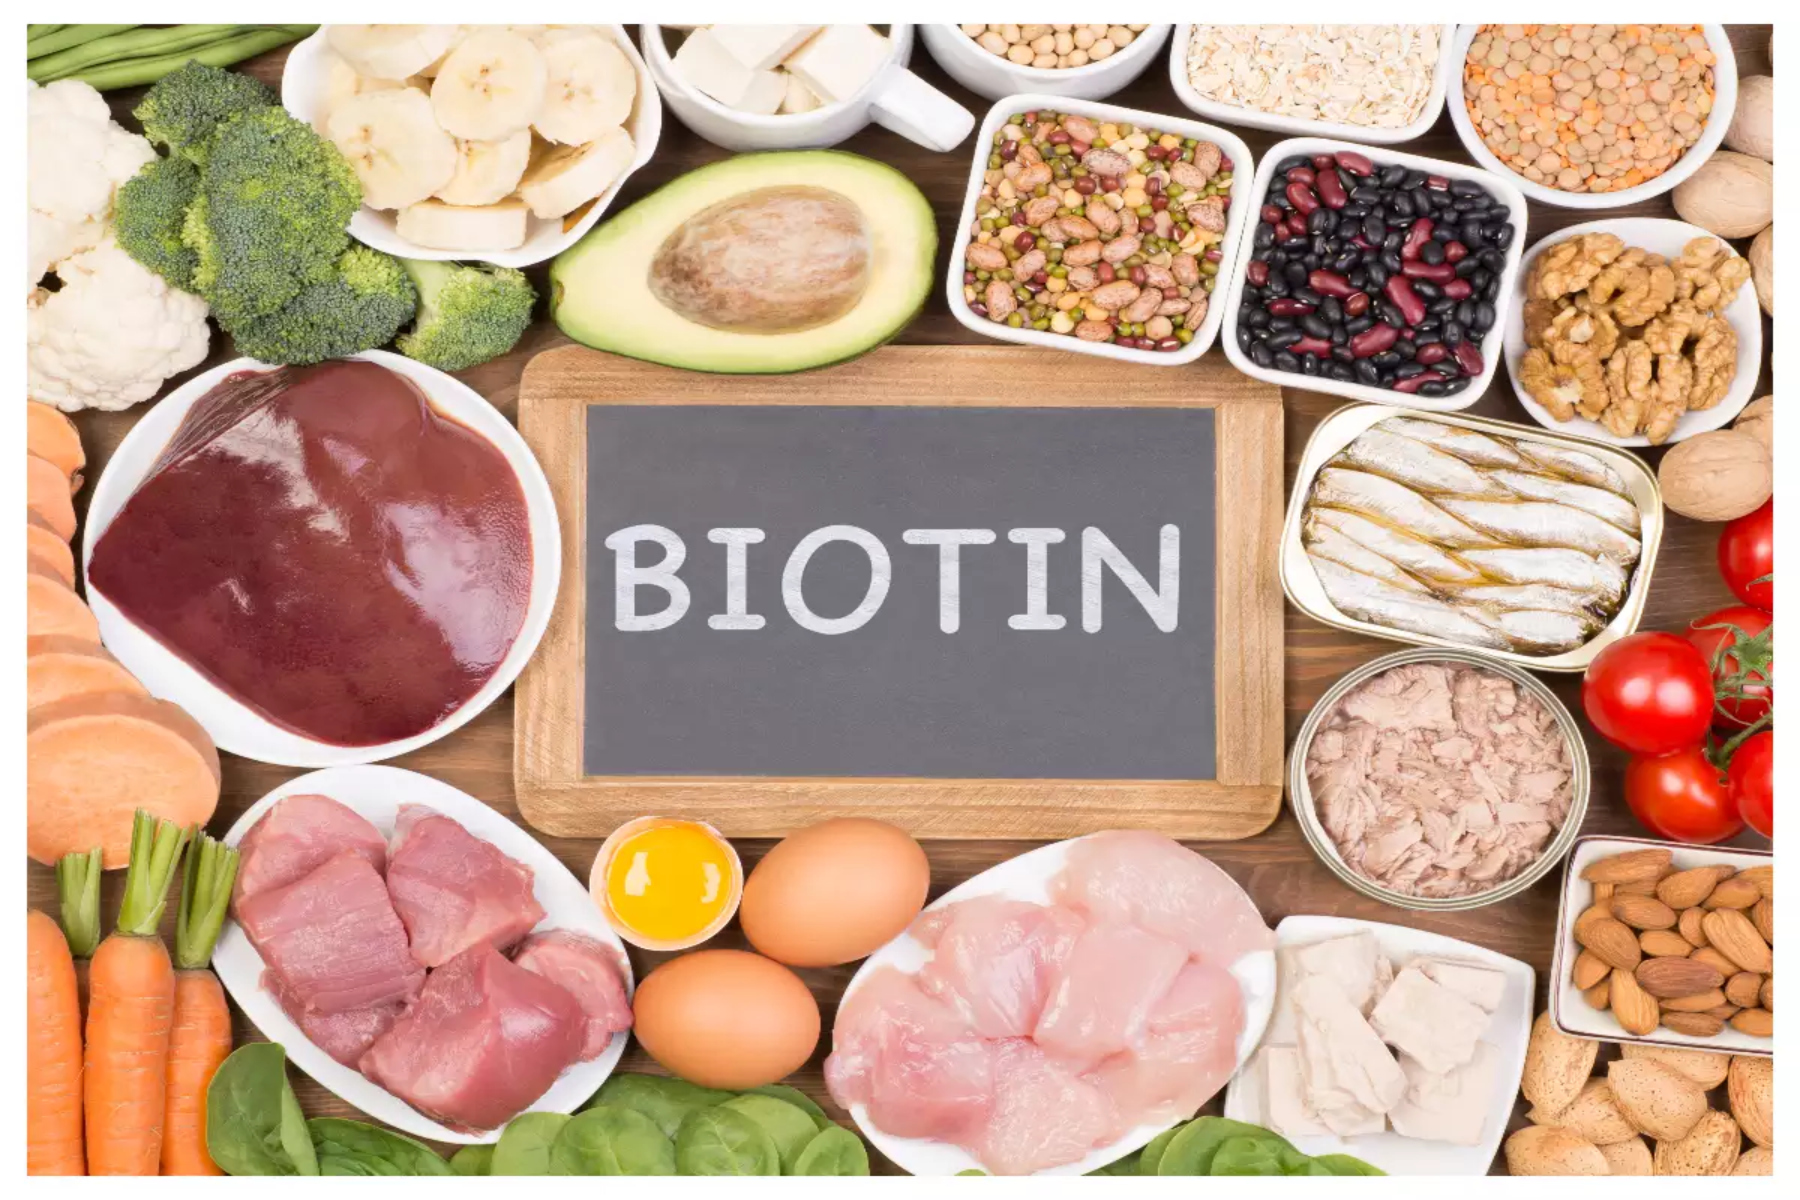 Βιοτίνη: Ποιες τροφές περιέχουν βιοτίνη;